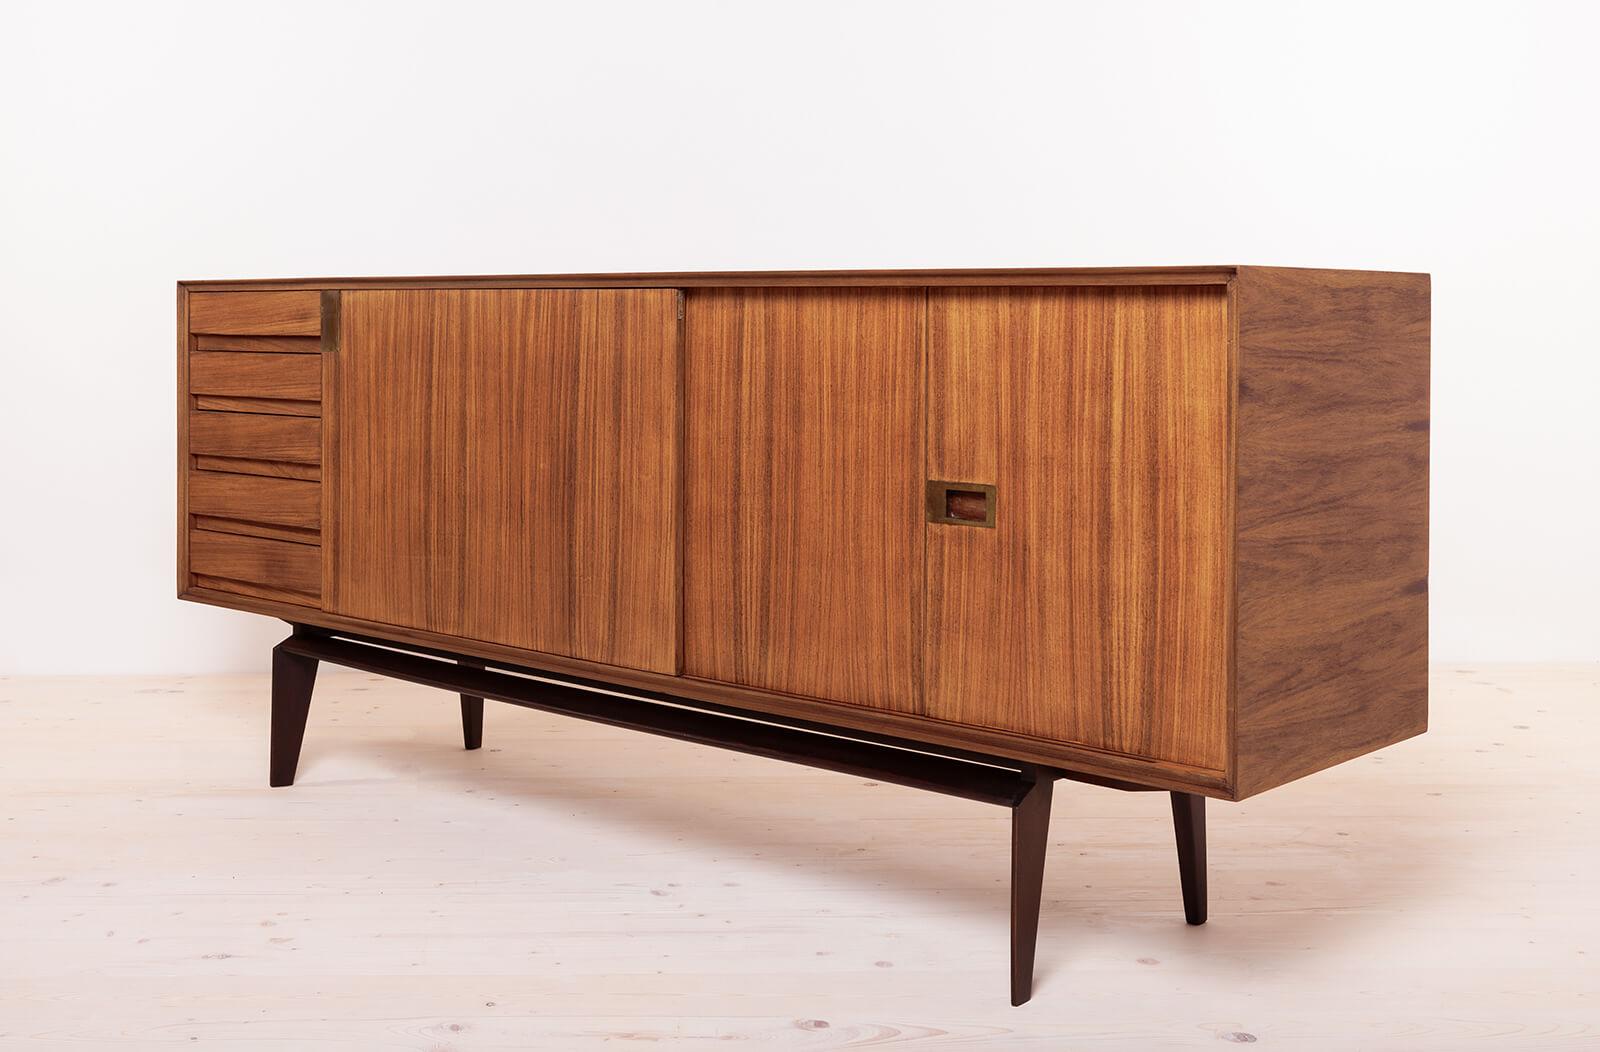 Mid-20th Century Vintage Midcentury Sideboard: Edmondo Palutari Design, Teak Wood & Brass Details